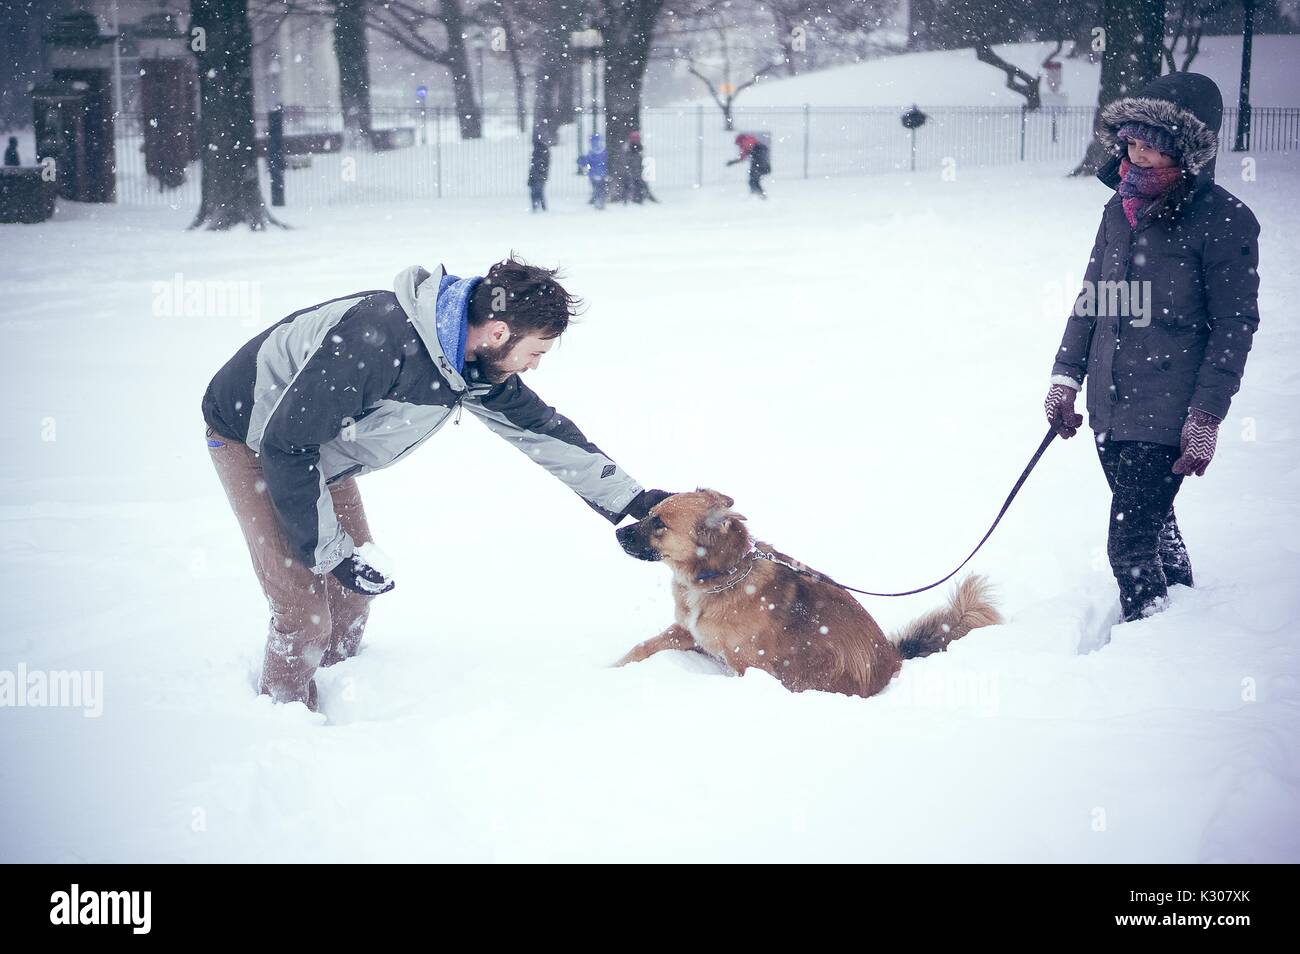 Ein Mann im Schnee Gang gekleidet beugt sich zu streicheln, seinen Hund im Schnee, während sein Besitzer ihn hält durch Leine, während einer Snow Day an der Johns Hopkins University, Baltimore, Maryland, 2016. Stockfoto